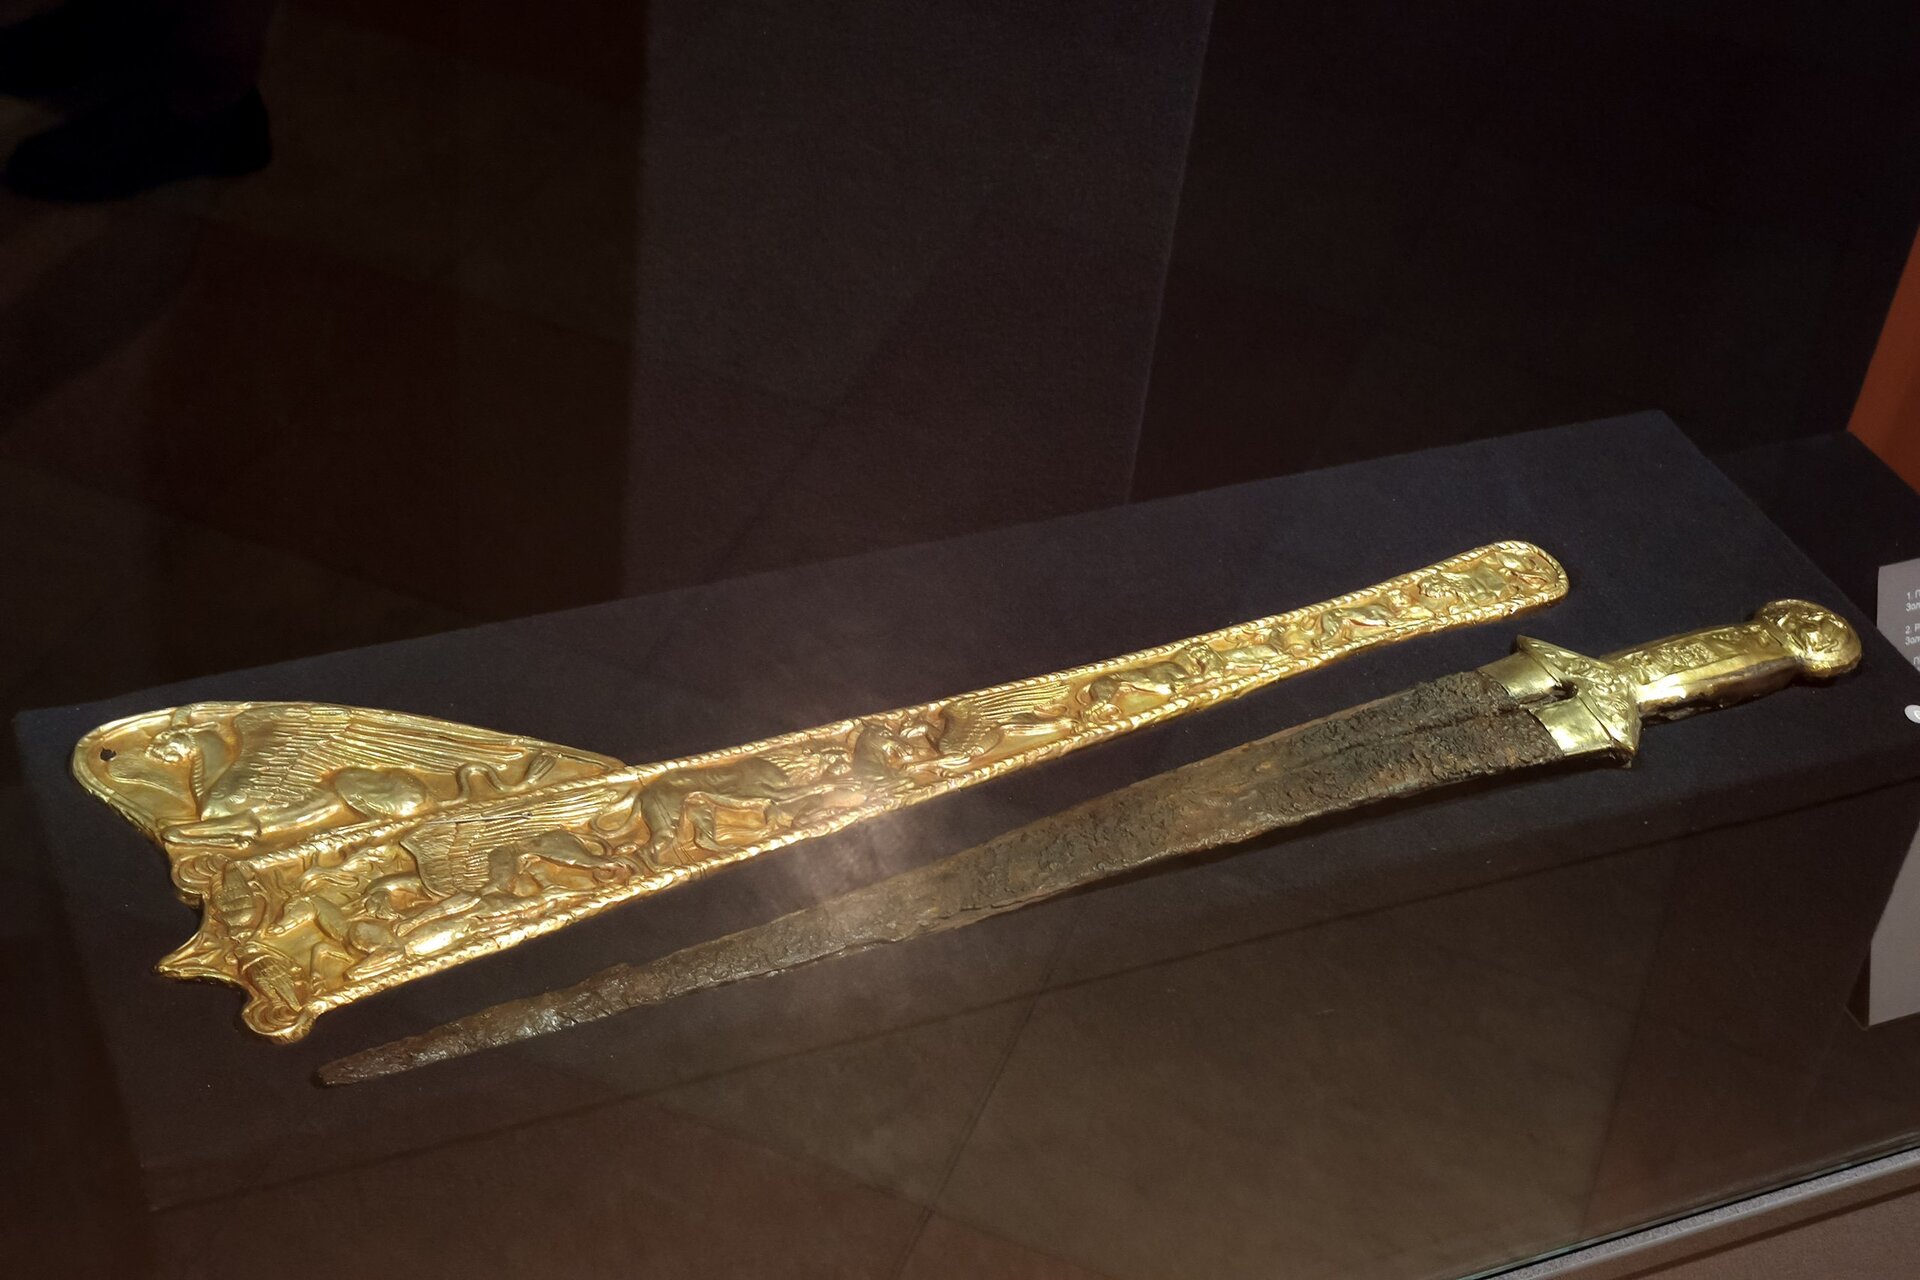 A golden Scythian sword